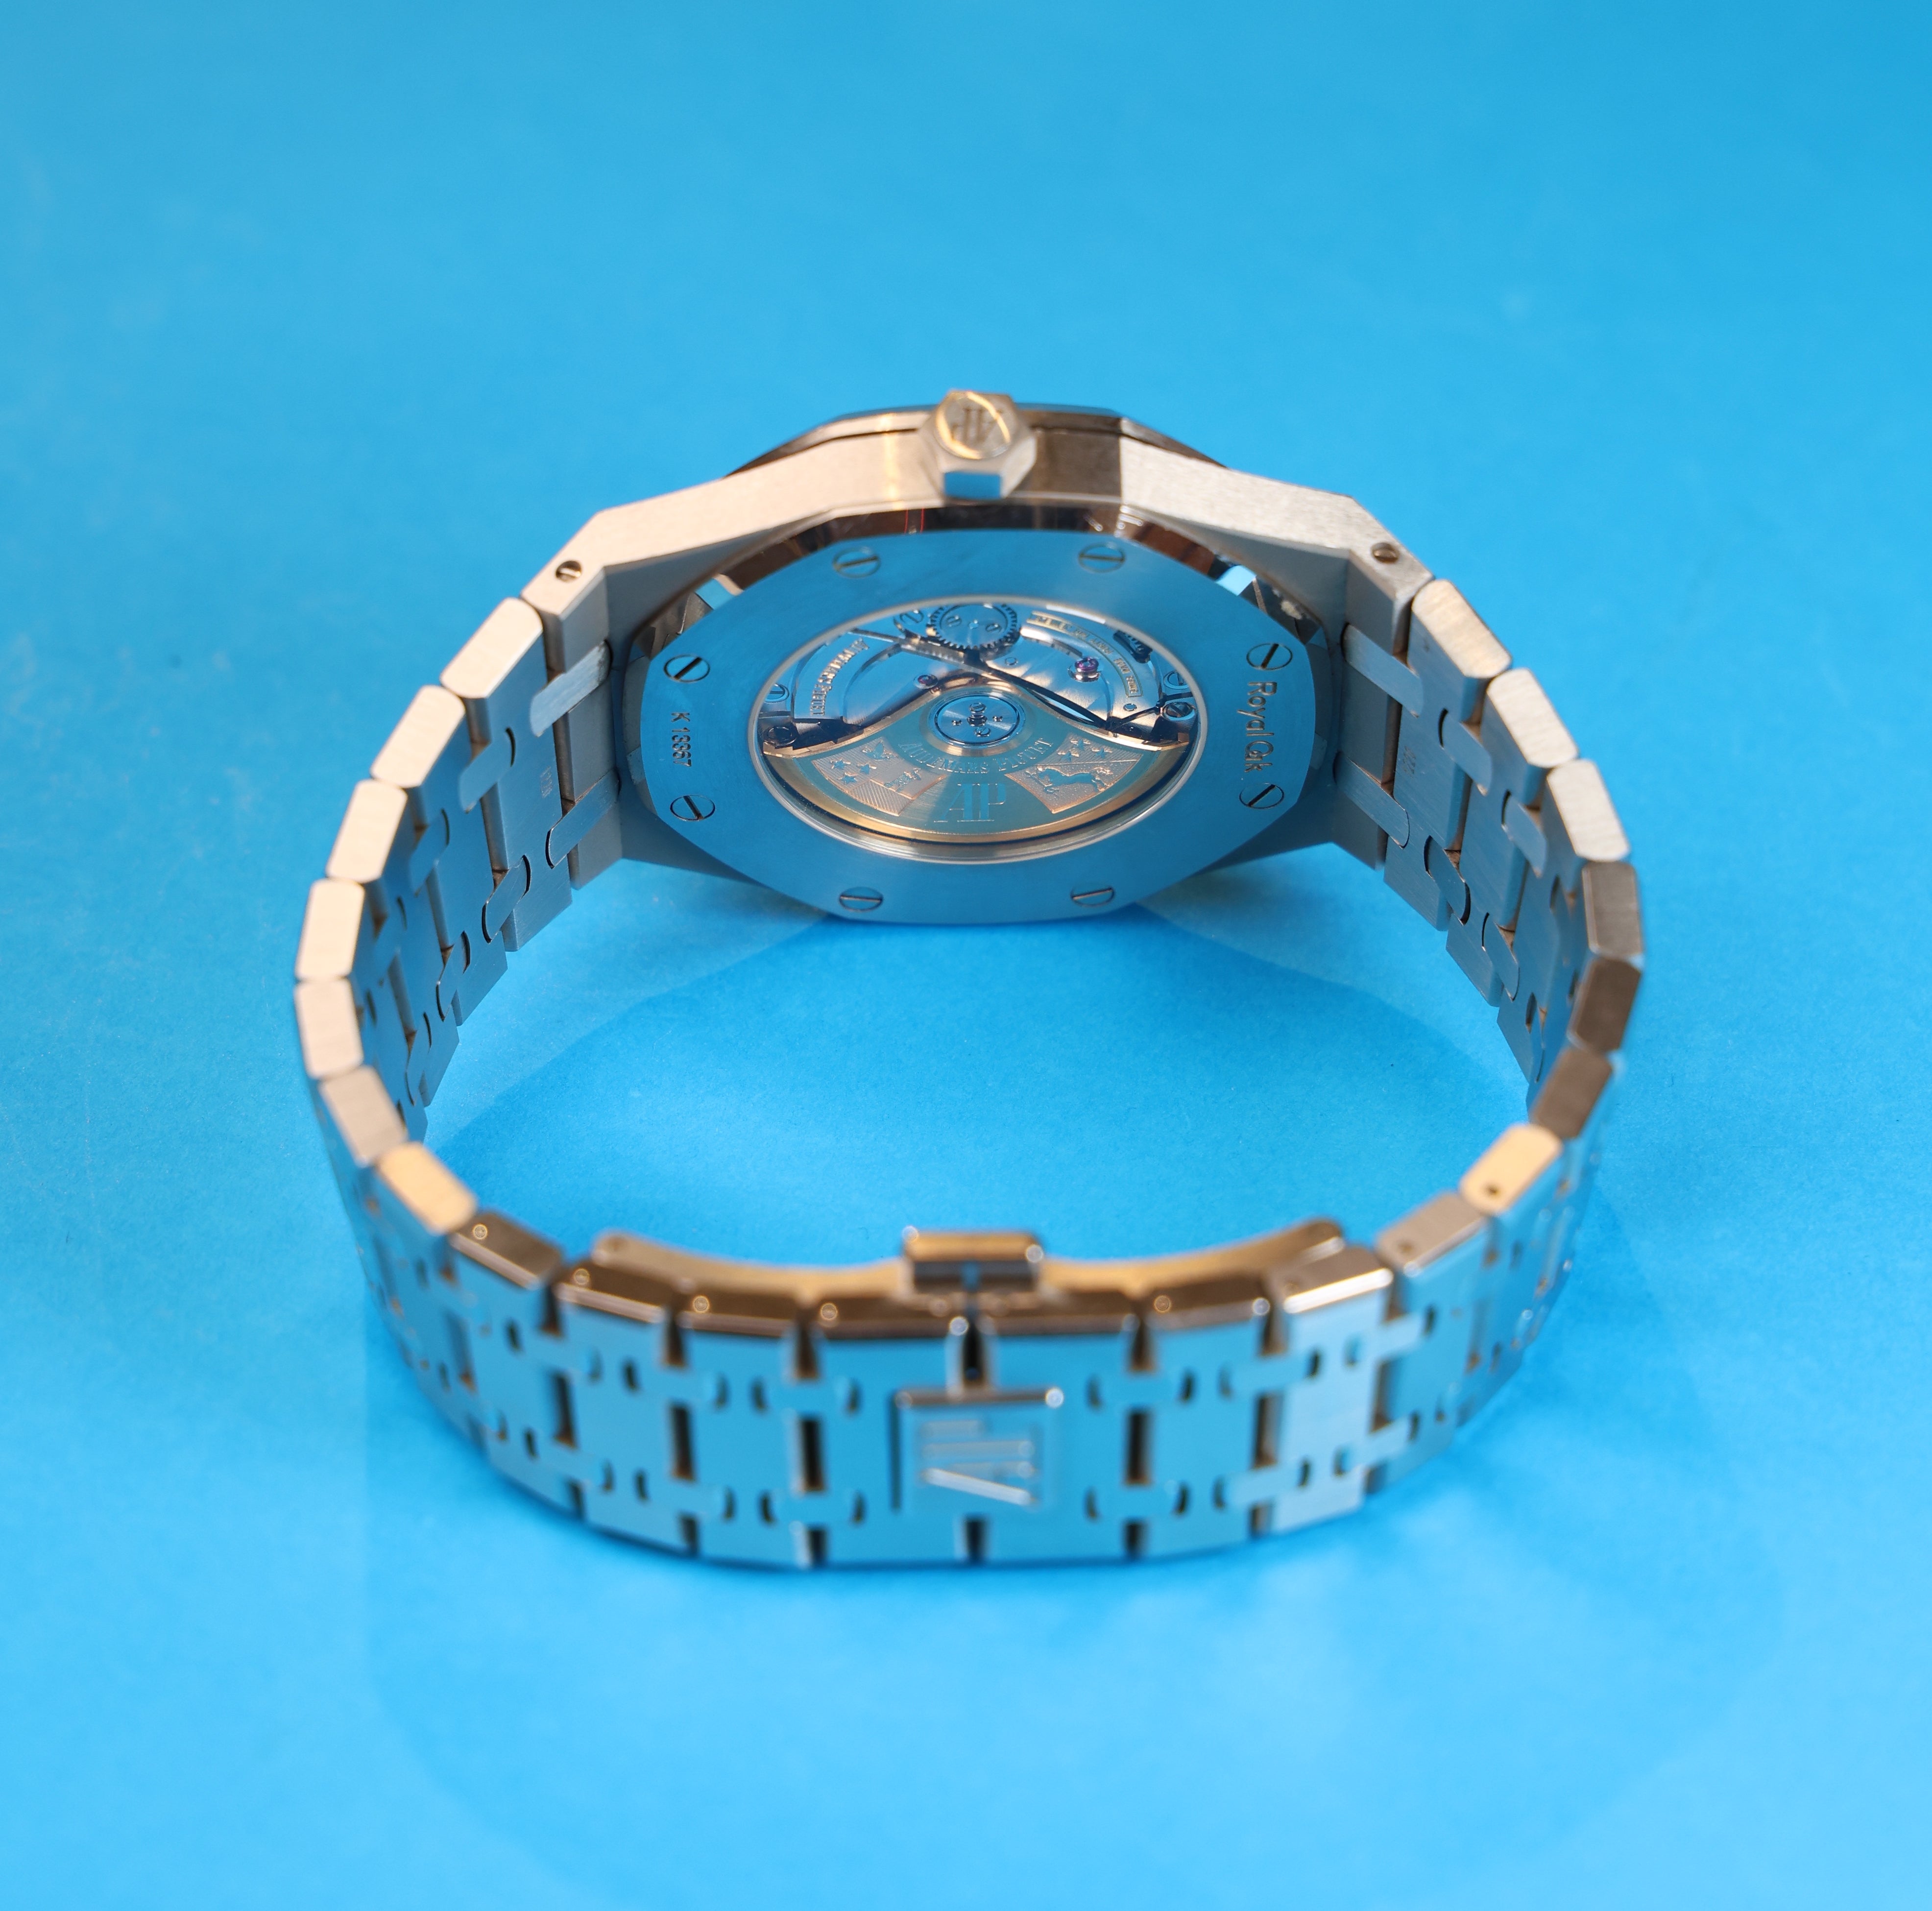 Audemars Piguet Royal Oak 15400st - Watch